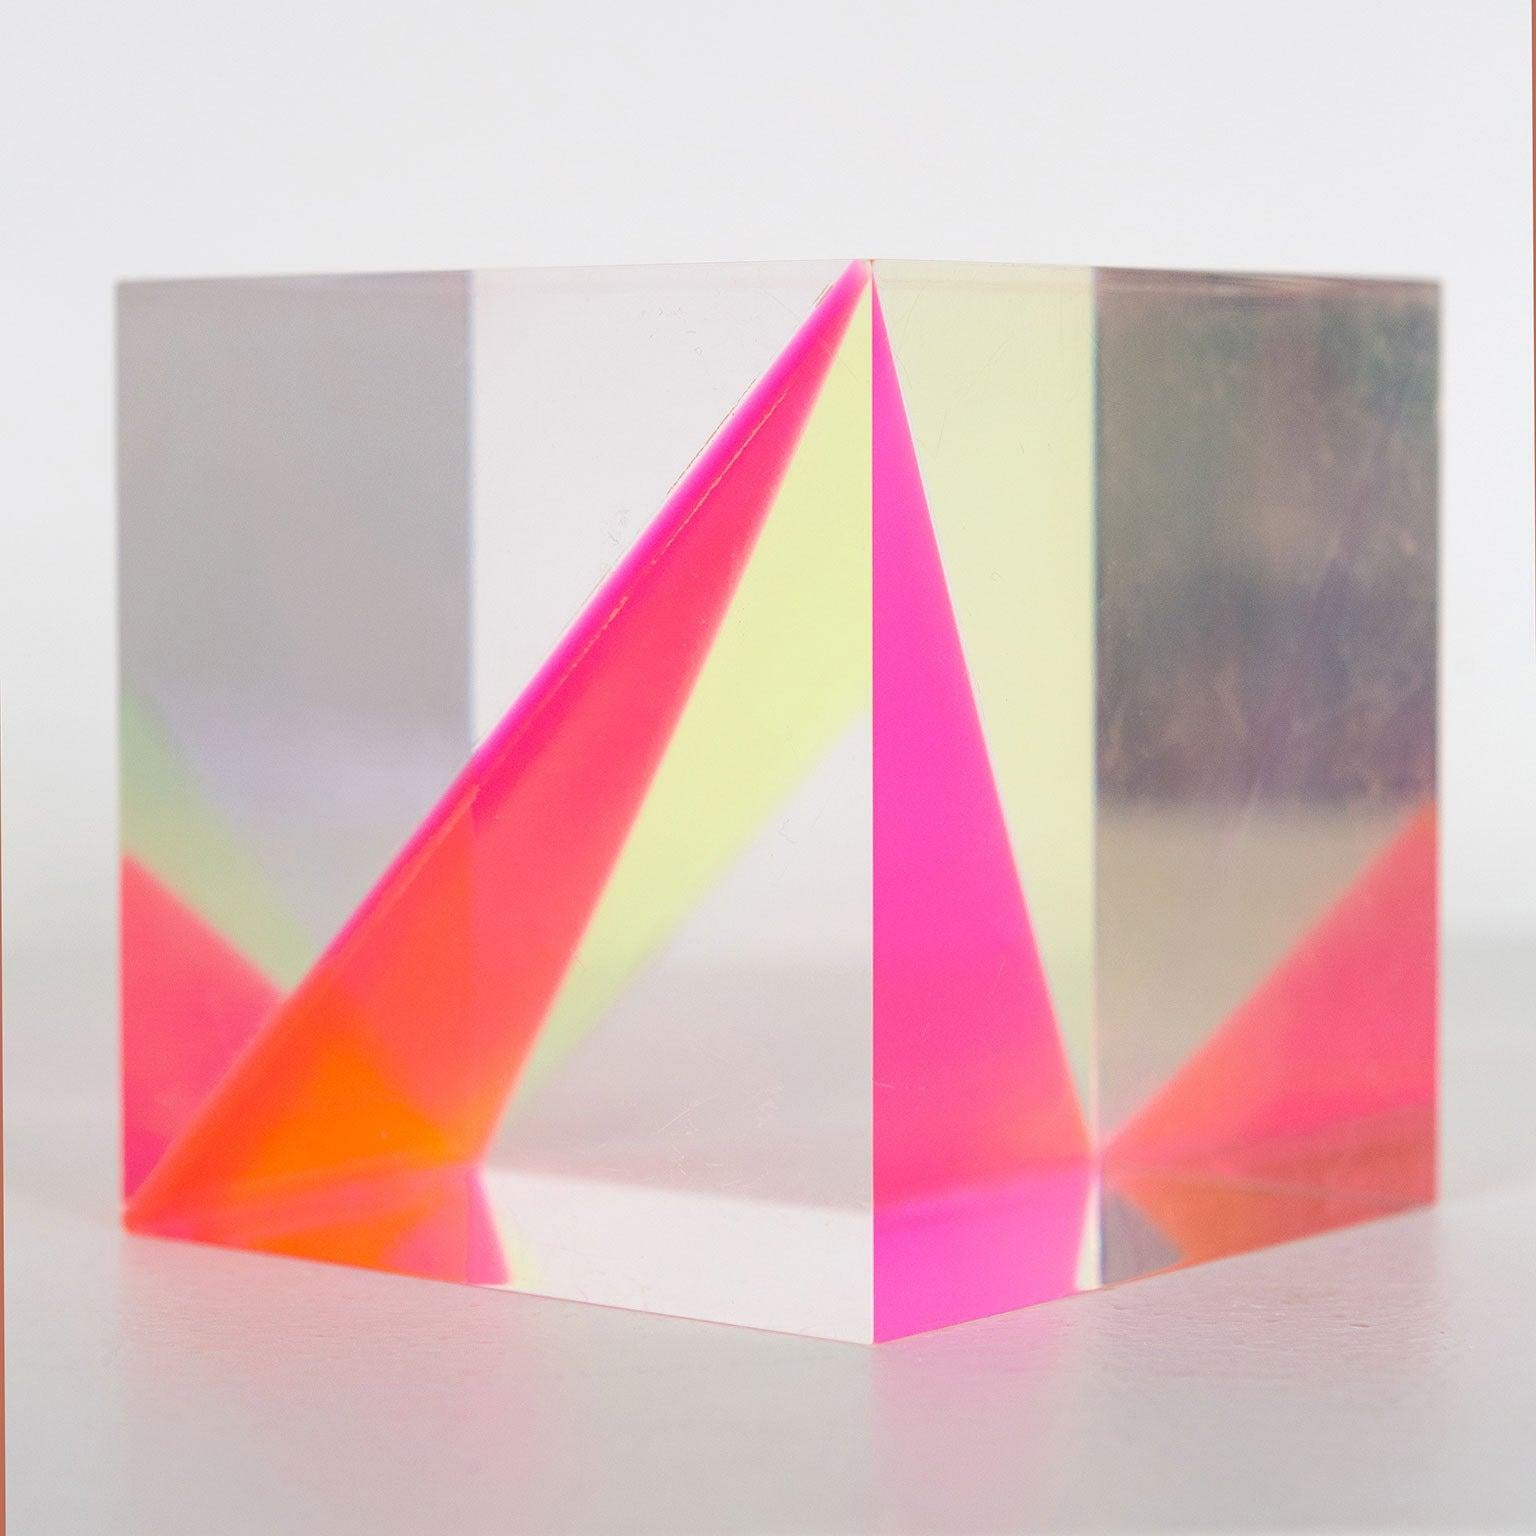 Sunshine Cube - Sculpture by Vasa Velizar Mihich